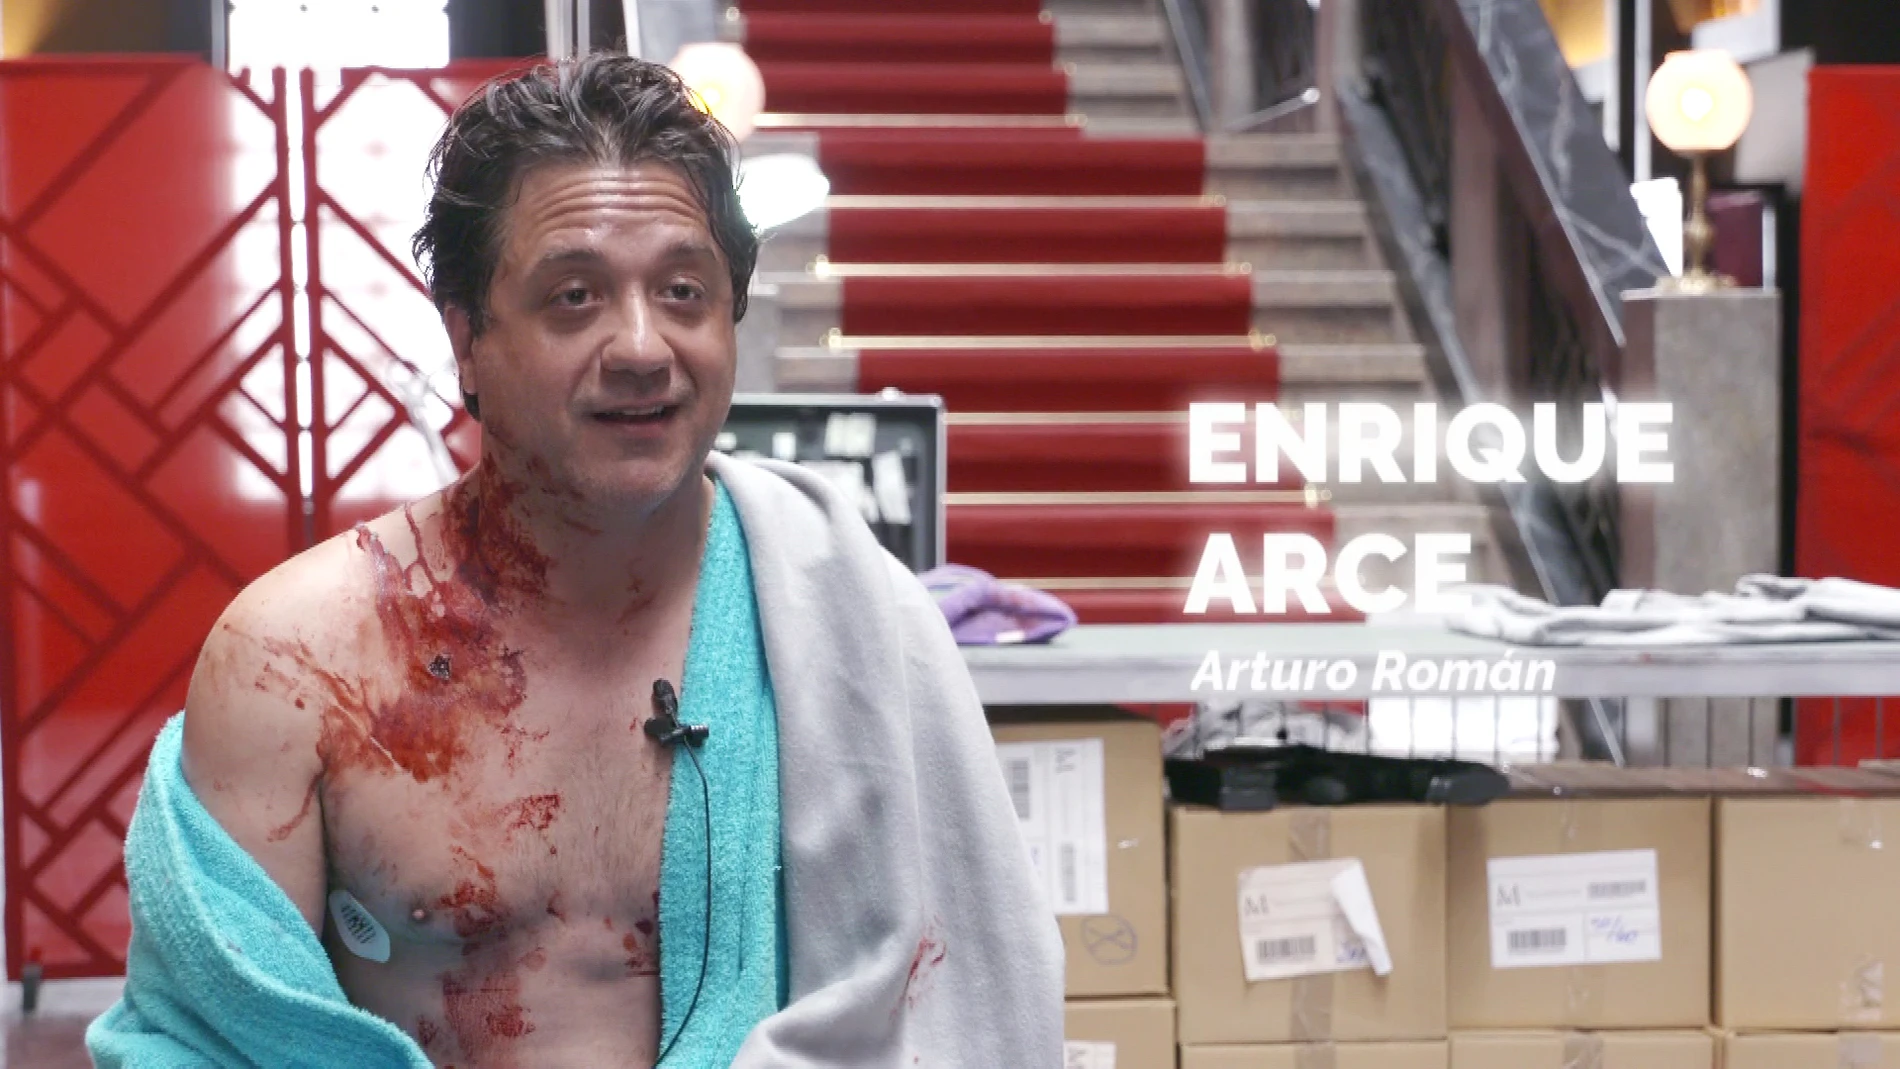 Enrique Arce confiesa haber recibido puntos reales en la piel durante el rodaje de su operación